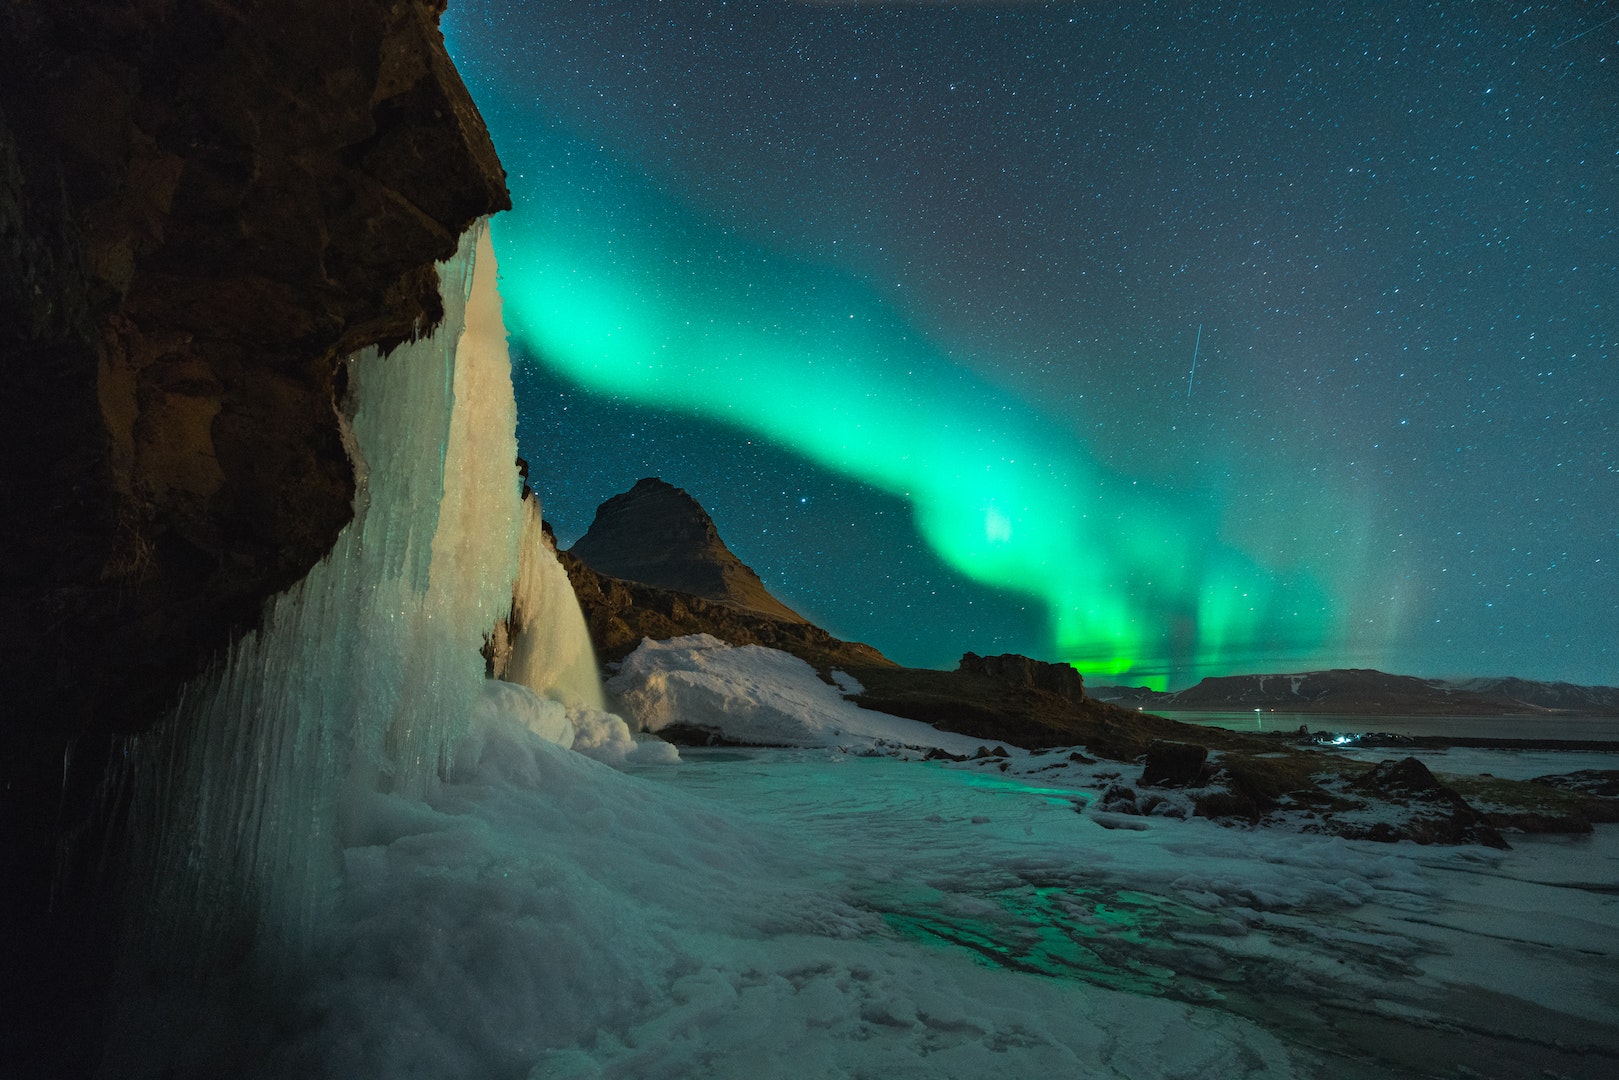 En Islande, les aurores boréales ont surtout lieu en hiver